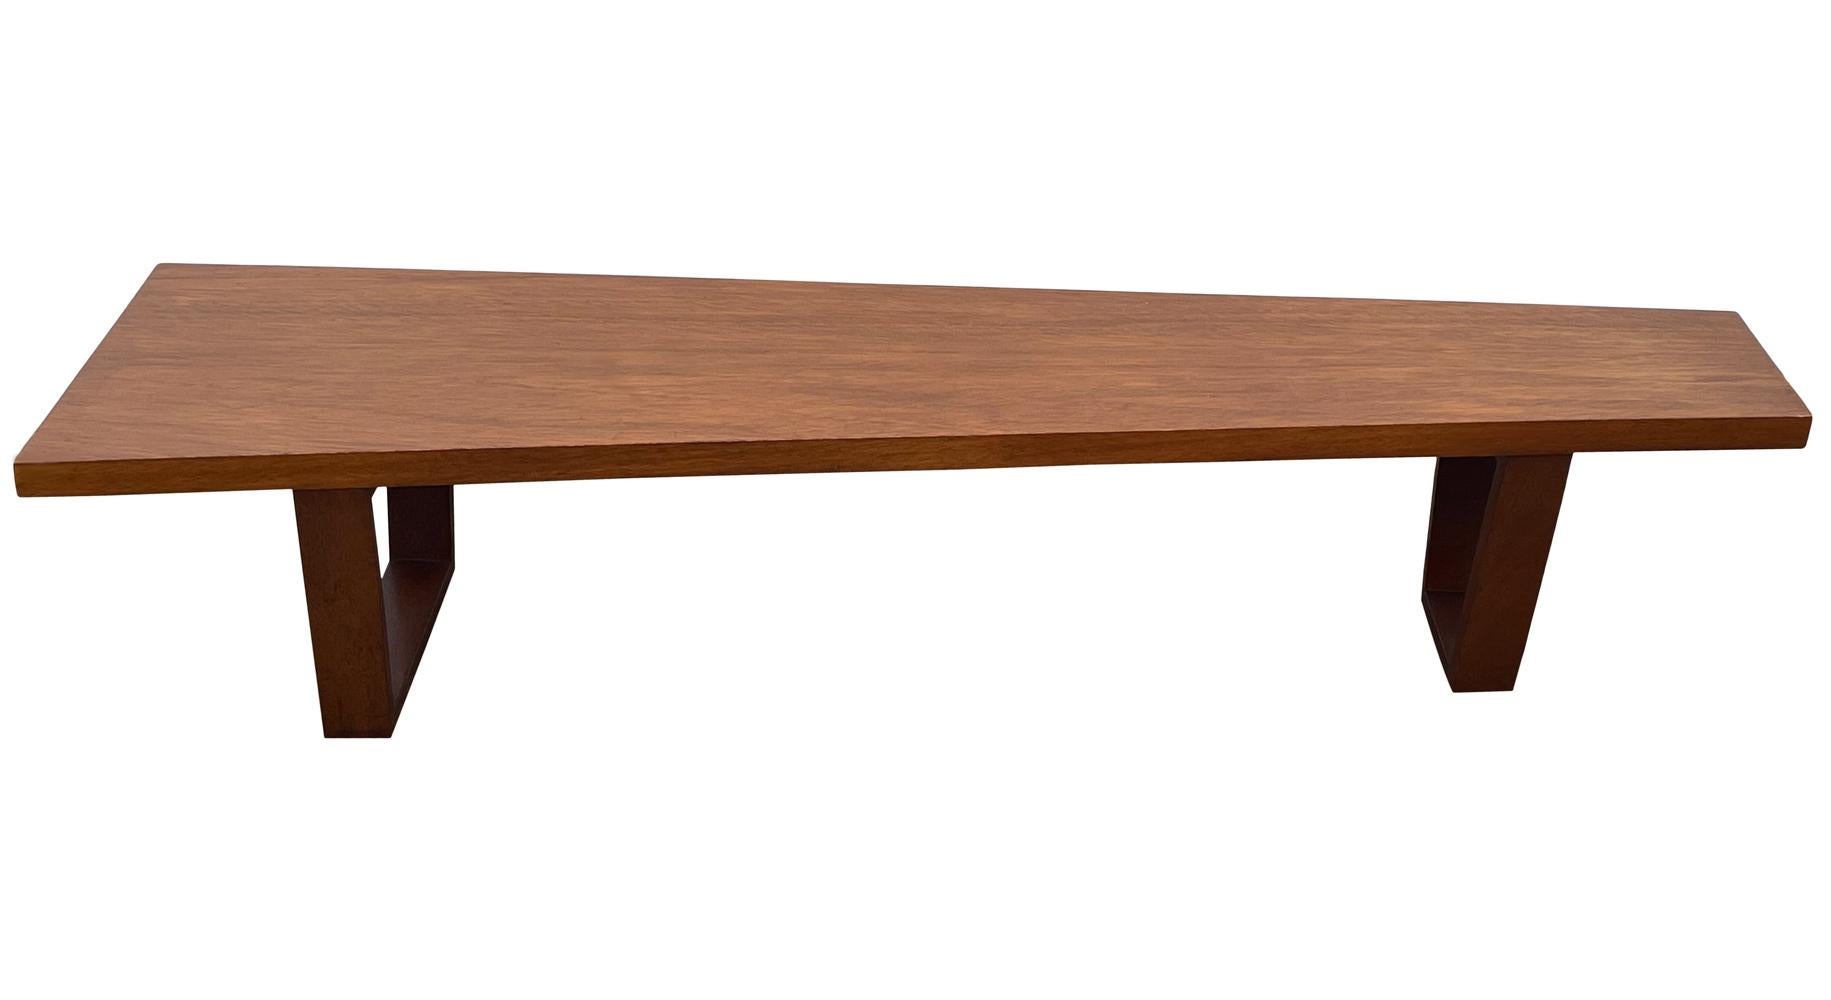 Un long banc ou table de cocktail de belle facture datant des années 1960 environ. Il présente un design asymétrique bien proportionné avec une construction en bois massif. Très propre et prêt à l'emploi.